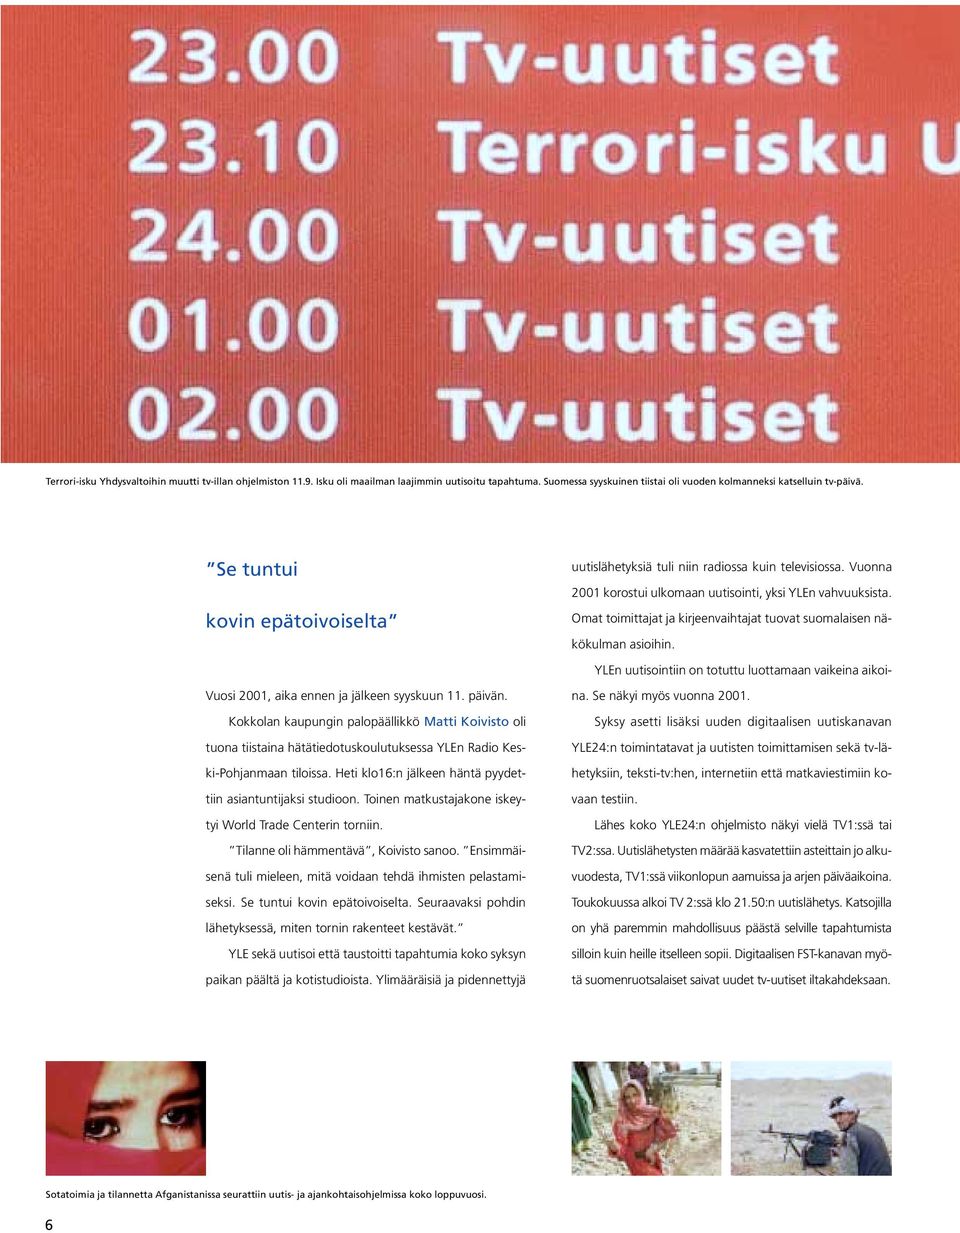 Omat toimittajat ja kirjeenvaihtajat tuovat suomalaisen näkökulman asioihin. Vuosi 2001, aika ennen ja jälkeen syyskuun 11. päivän.